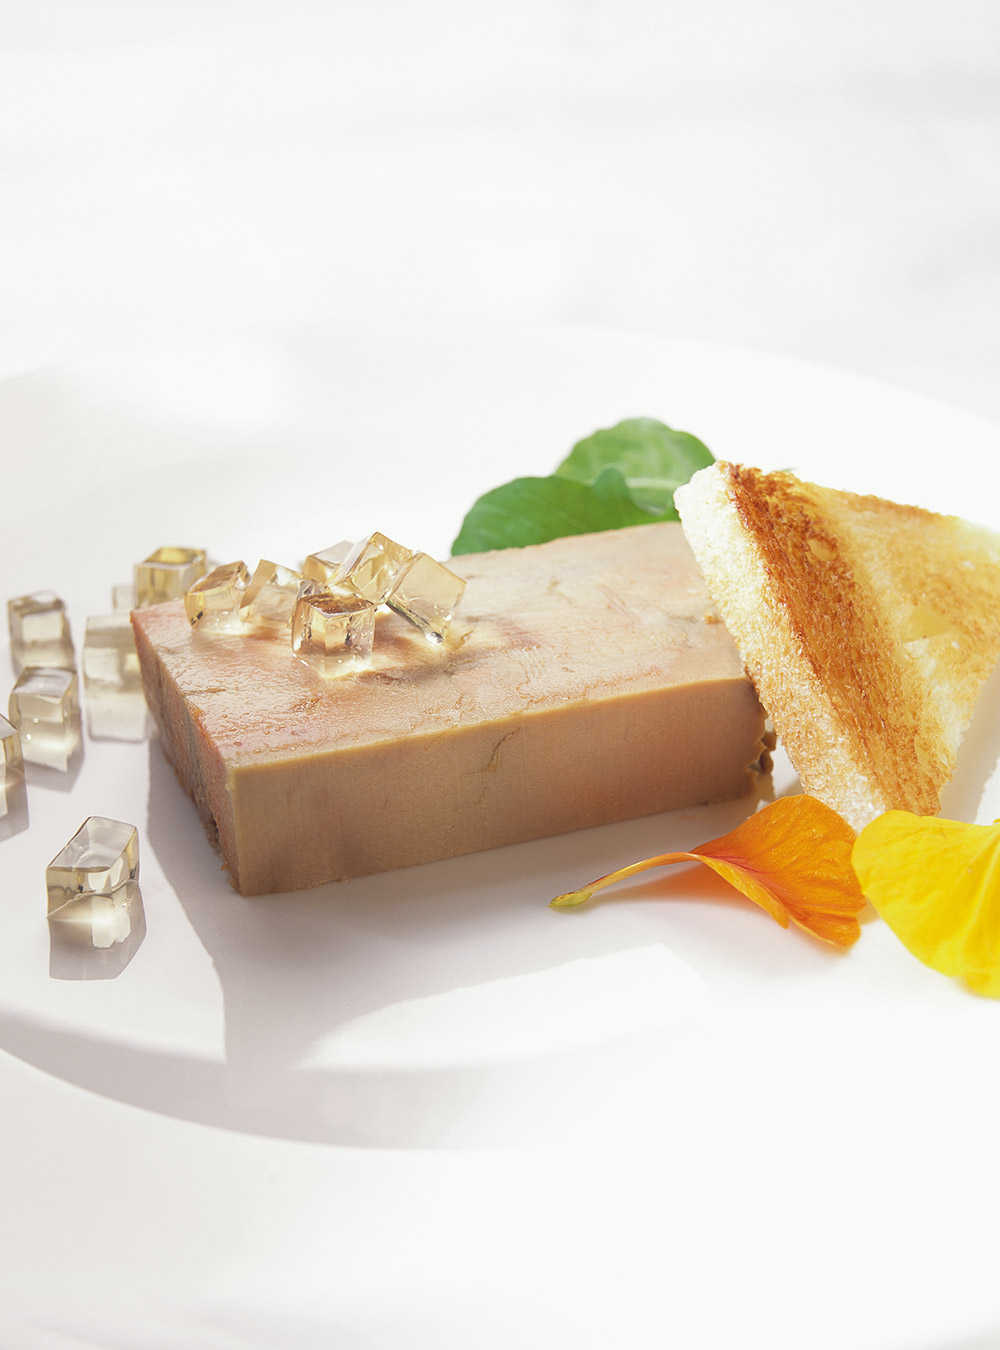 Terrine de foie gras | ricardo